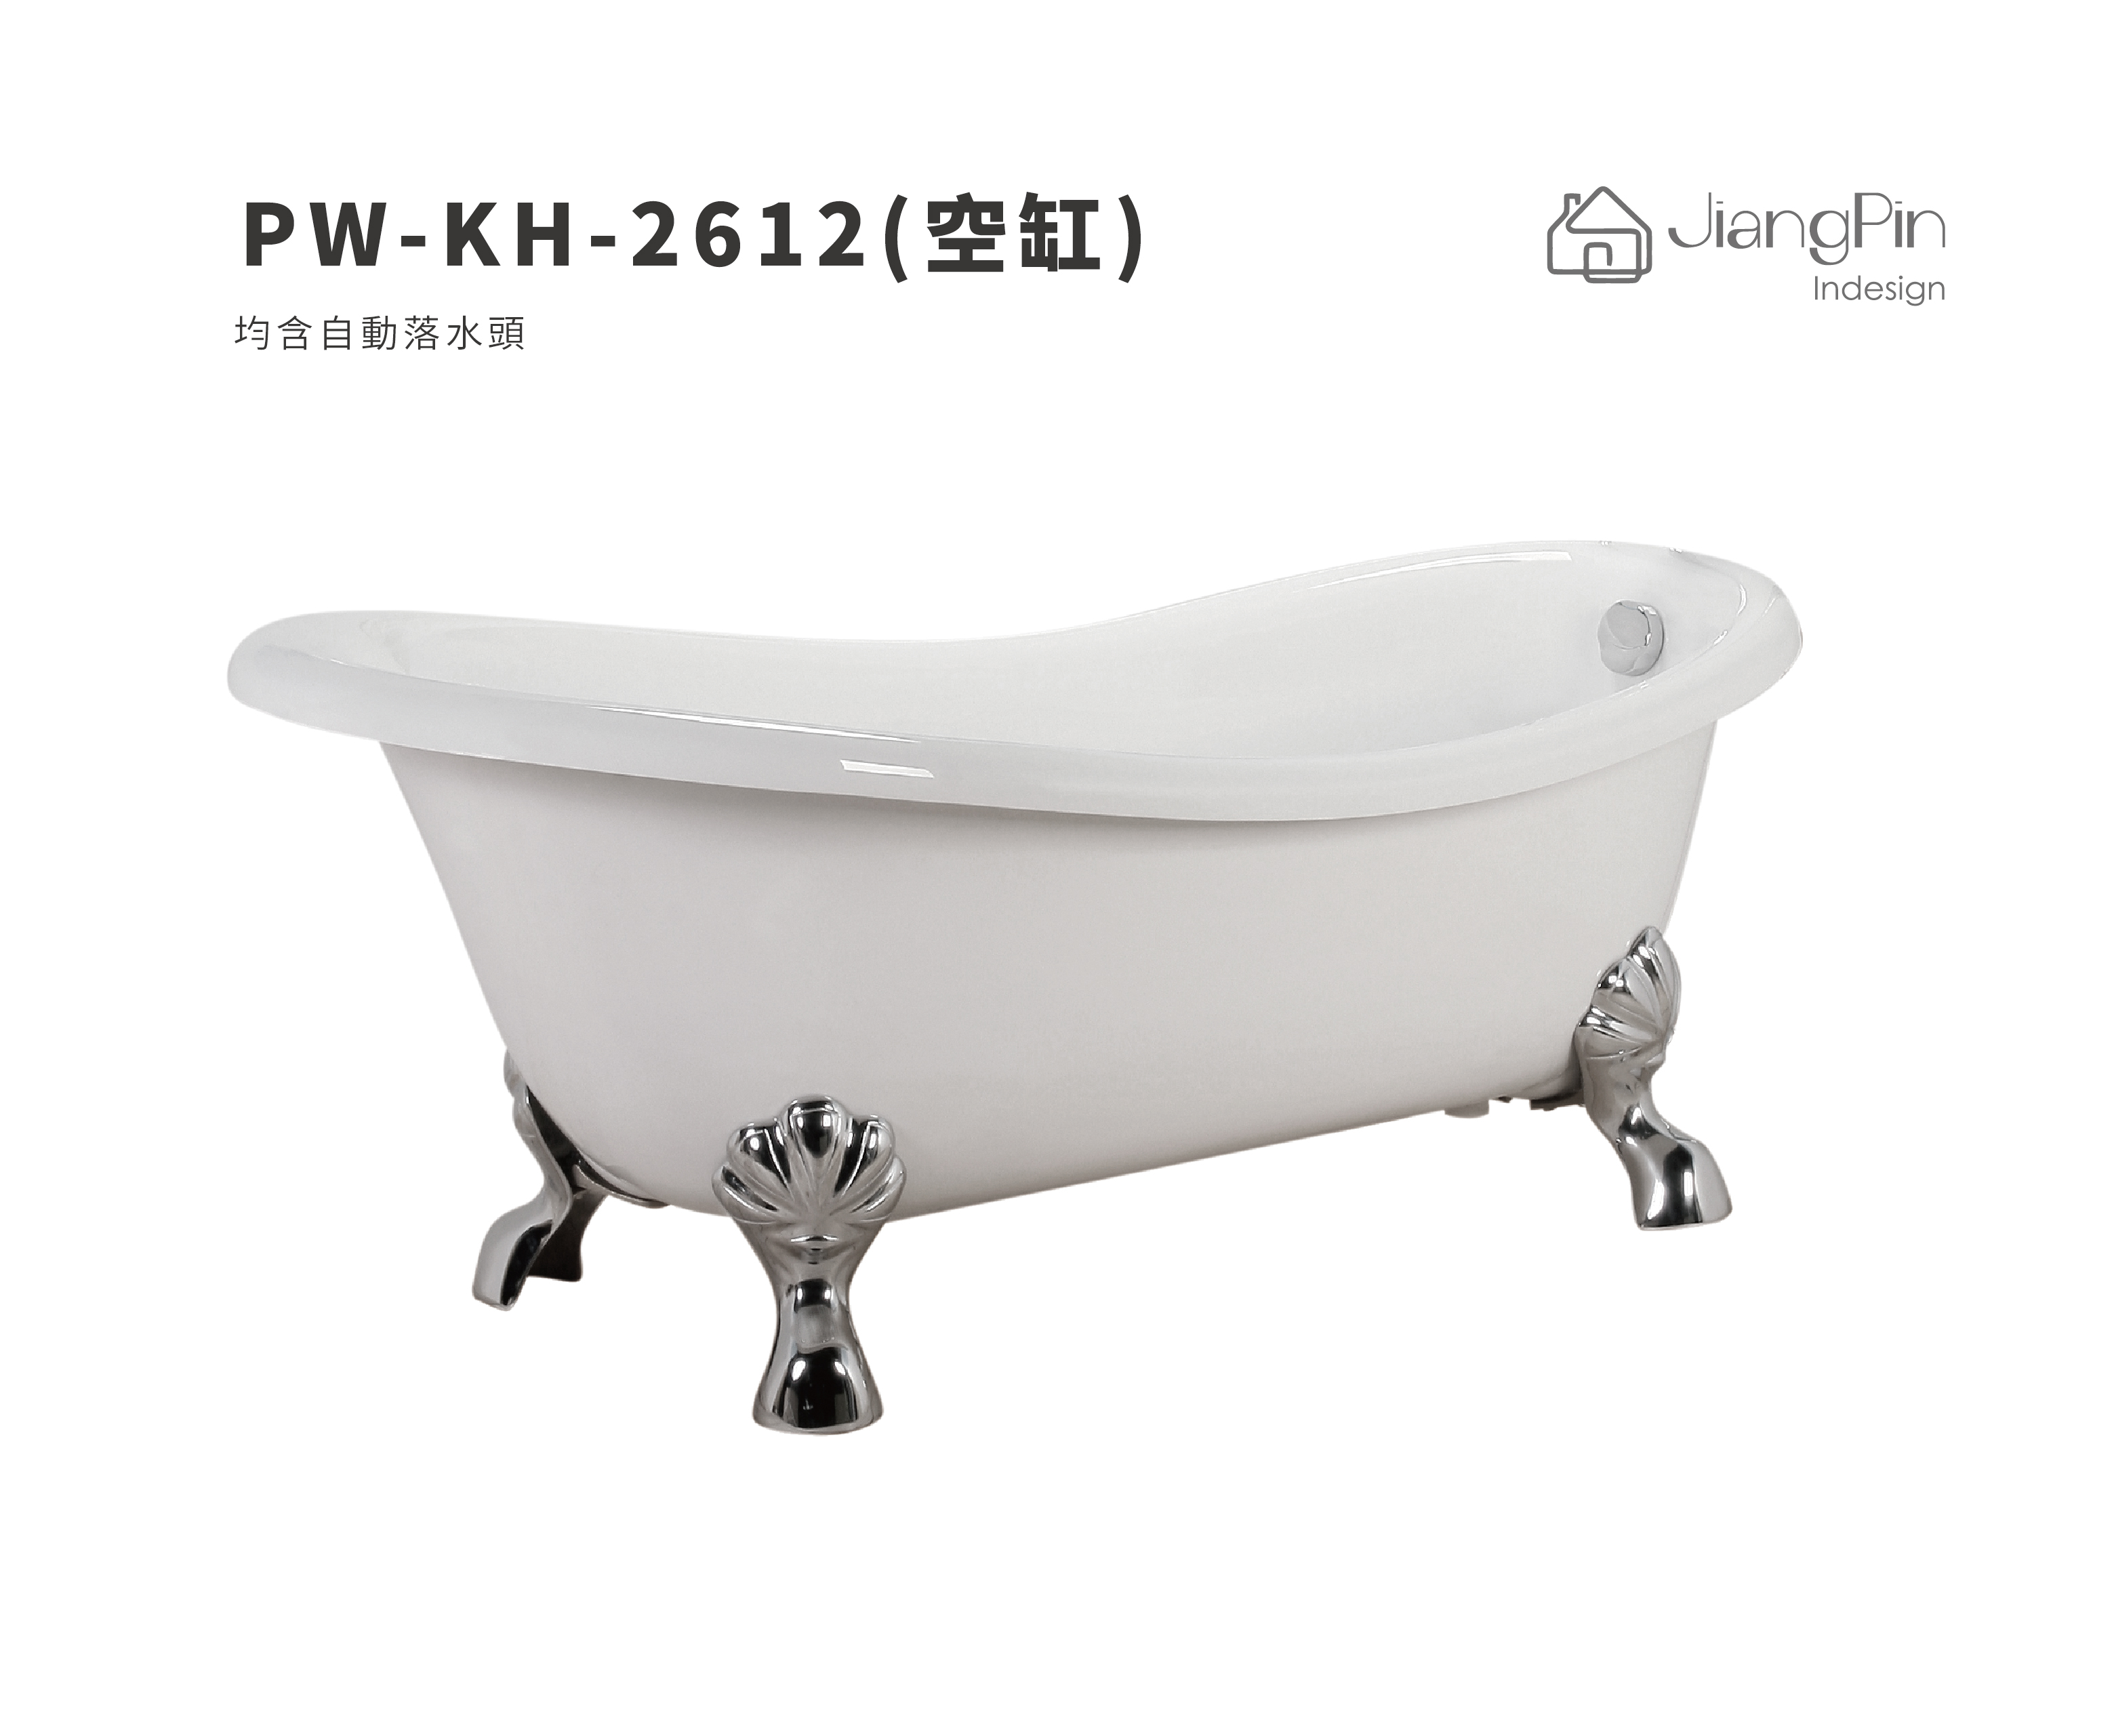 PW-KH-2612( 空缸) 壓克力浴缸 140-170cm